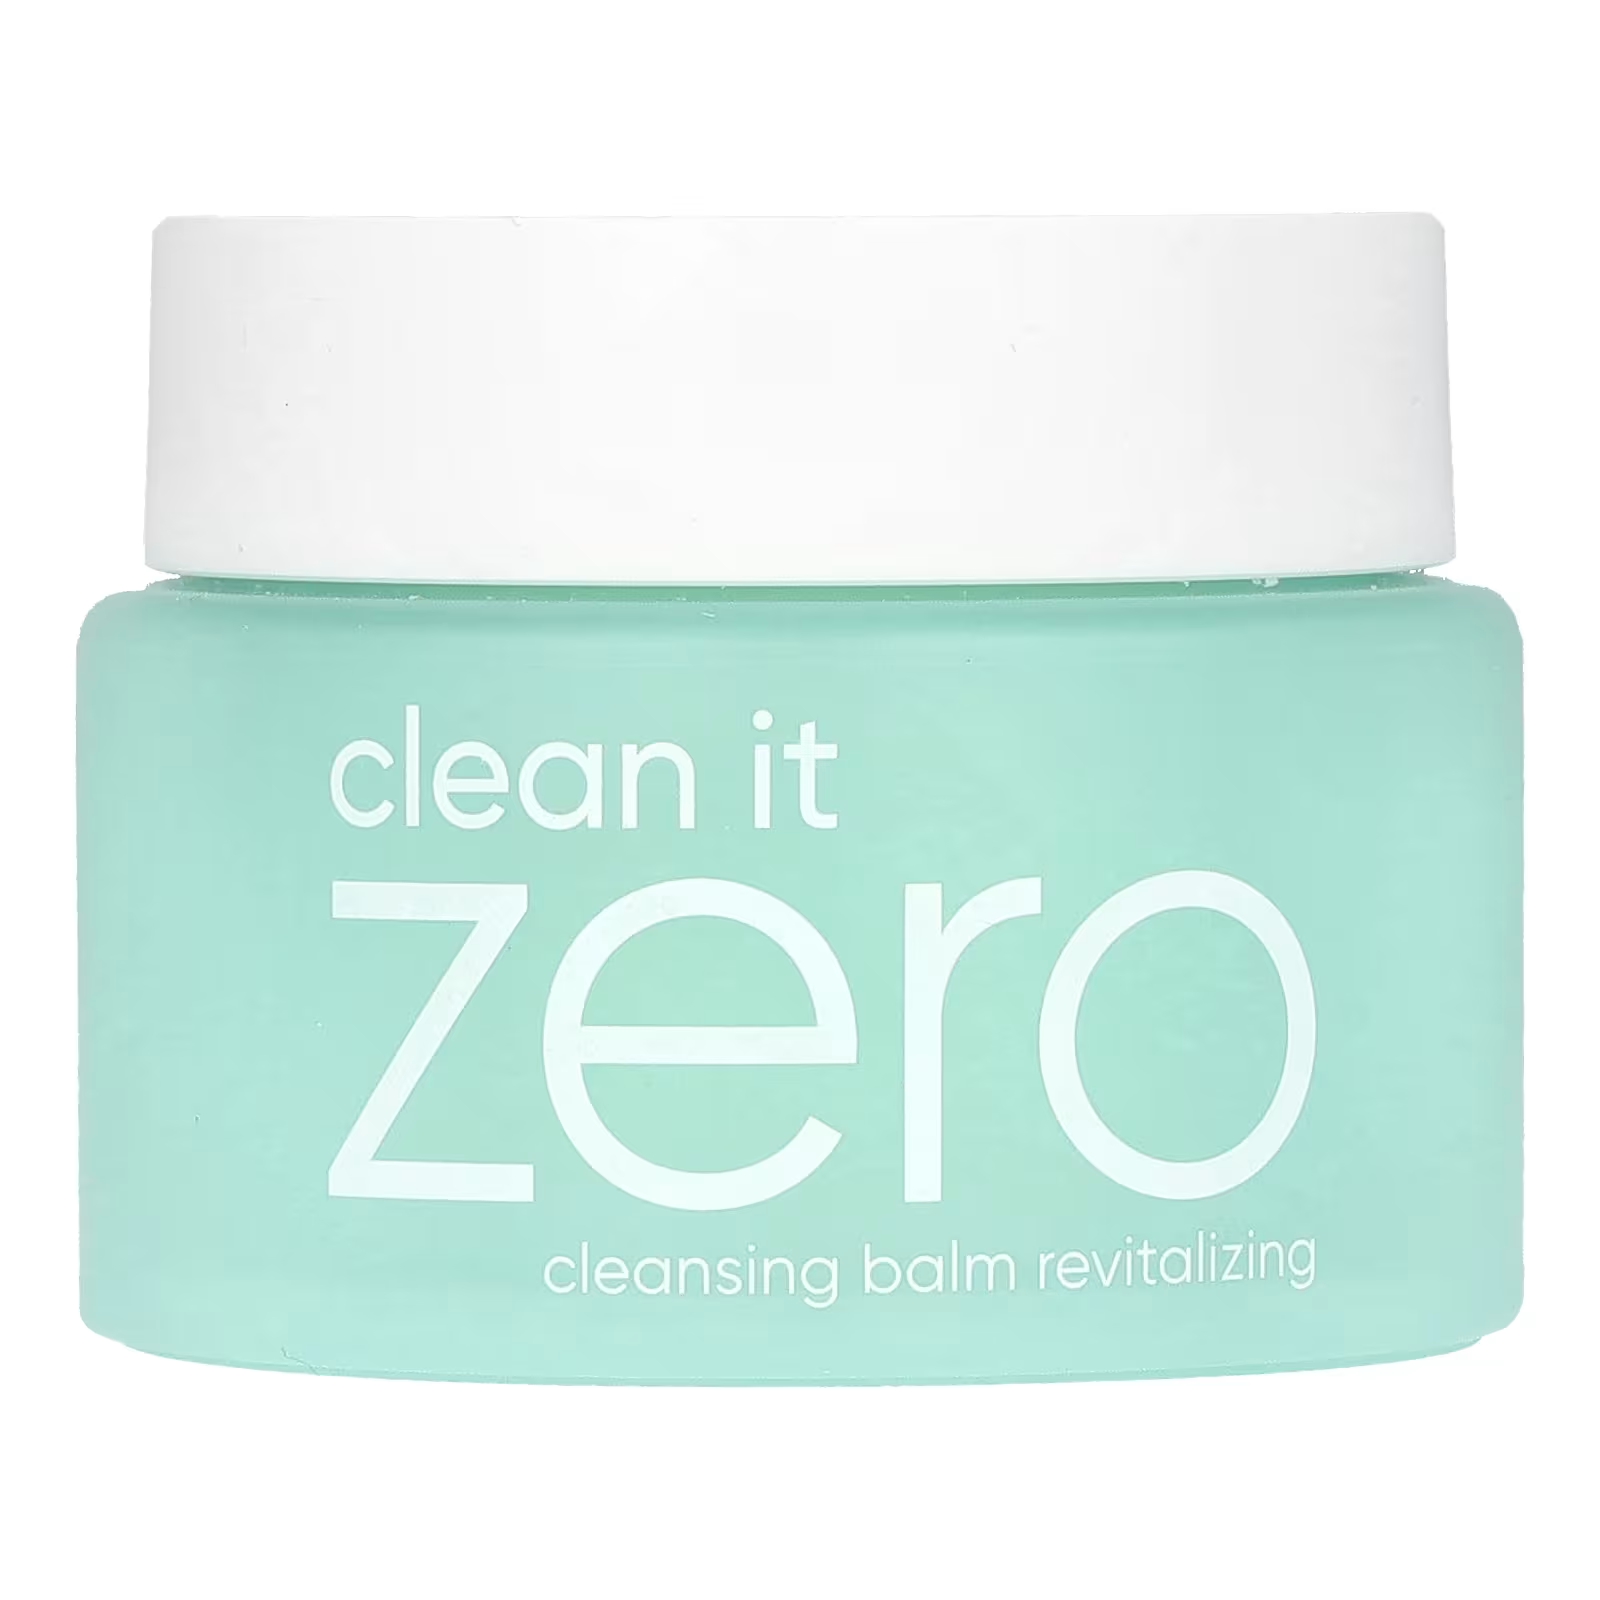 Очищающий бальзам Banila Co Clean It Zero 3-в-1, 100 мл очищающий бальзам banila co clean it zero original 3 в 1 оригинал